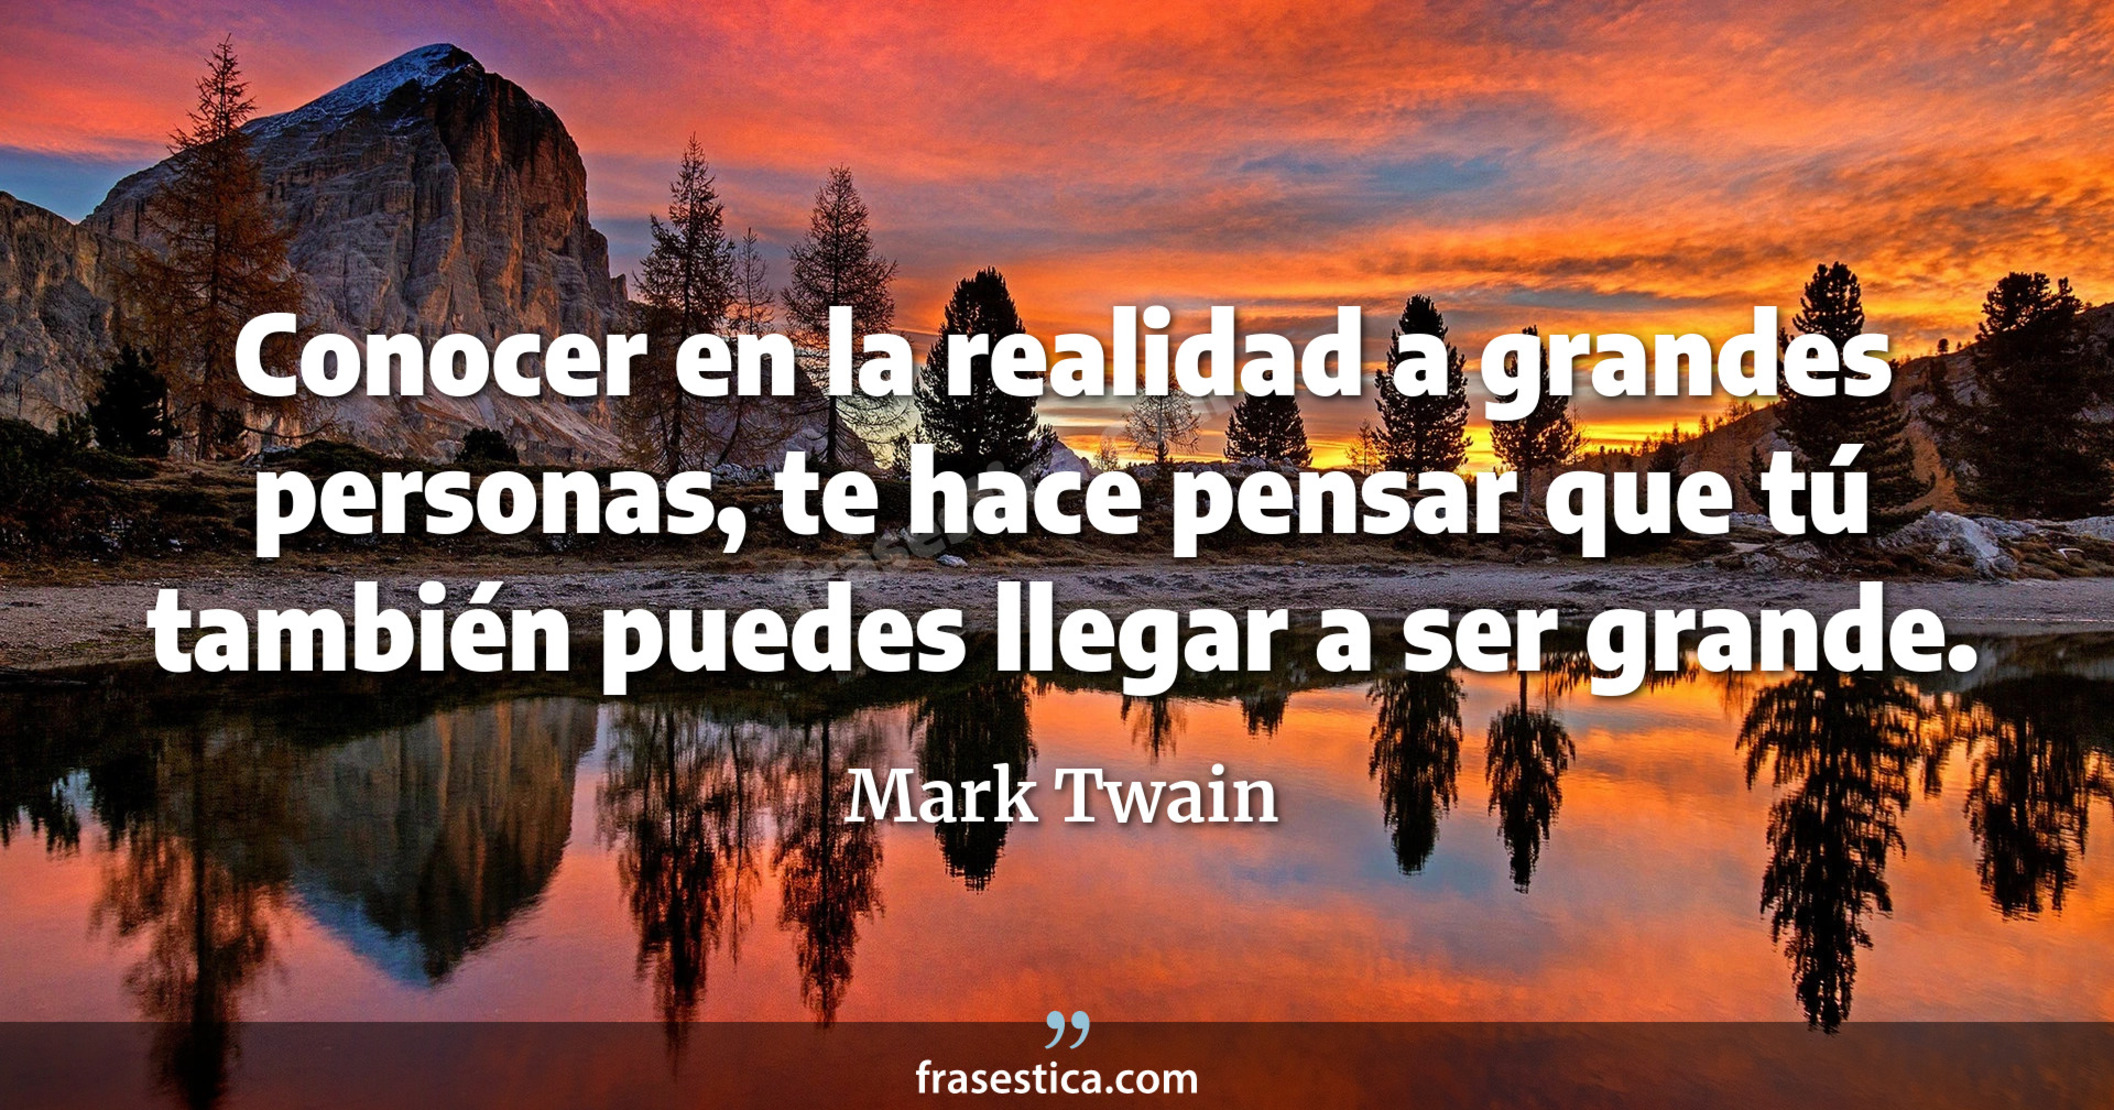 Conocer en la realidad a grandes personas, te hace pensar que tú también puedes llegar a ser grande. - Mark Twain